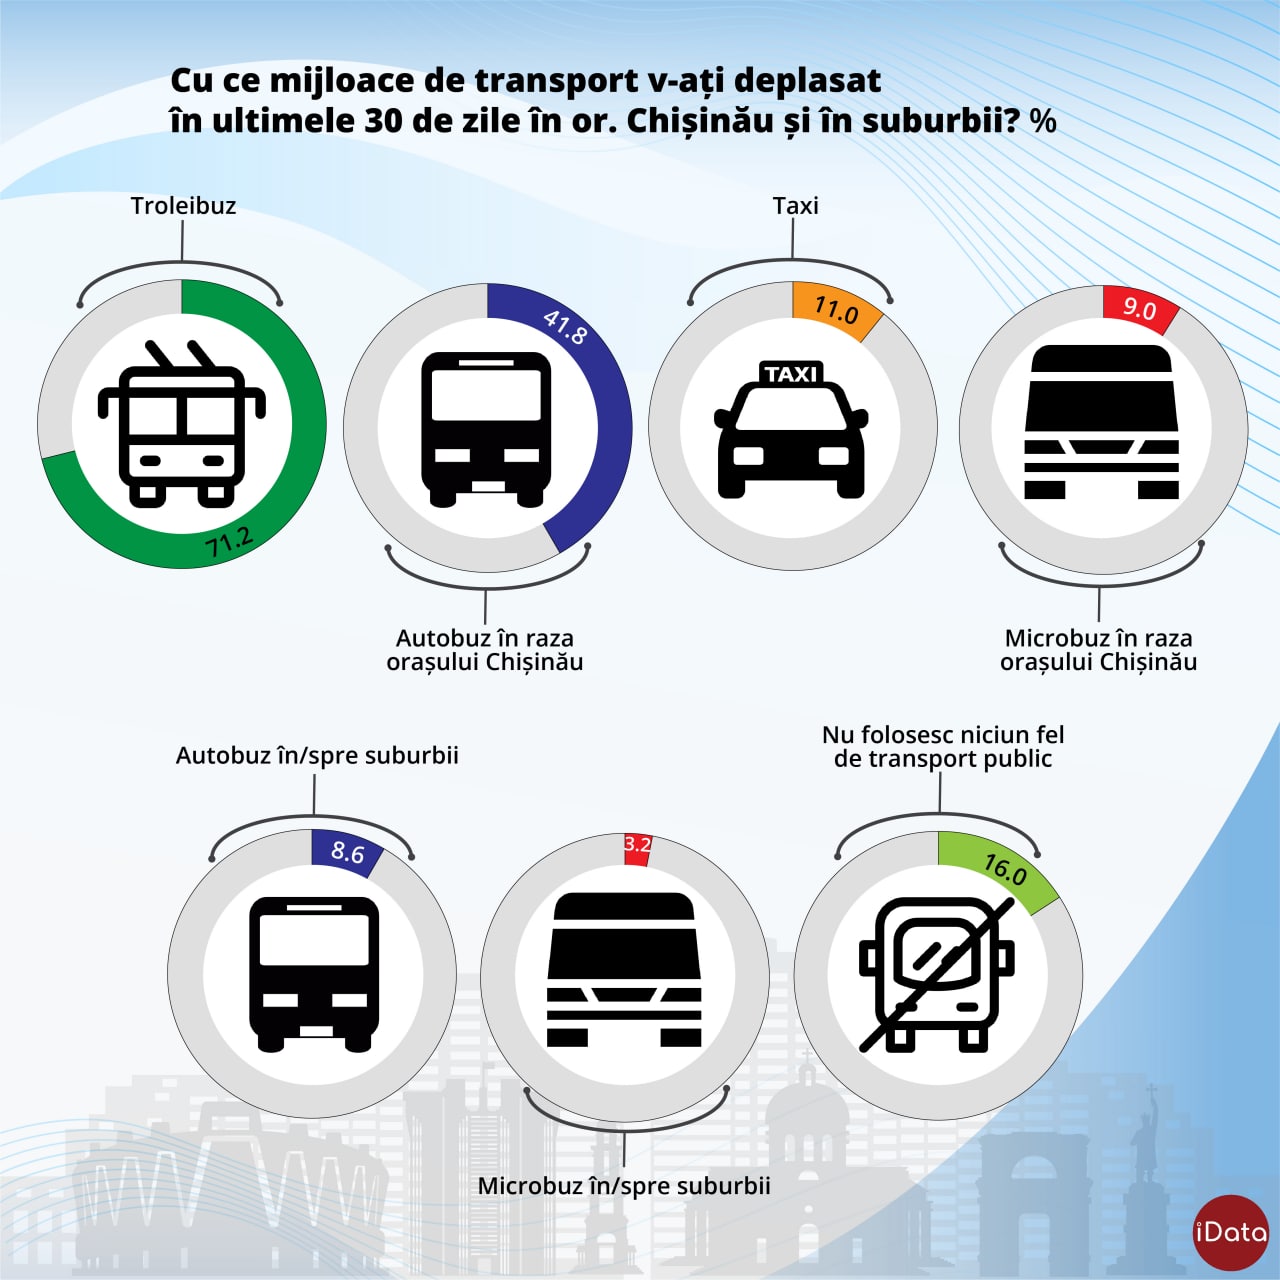 Sondaj: Câți locuitori ai municipiului Chișinău folosesc transportul public și câți îl evită?